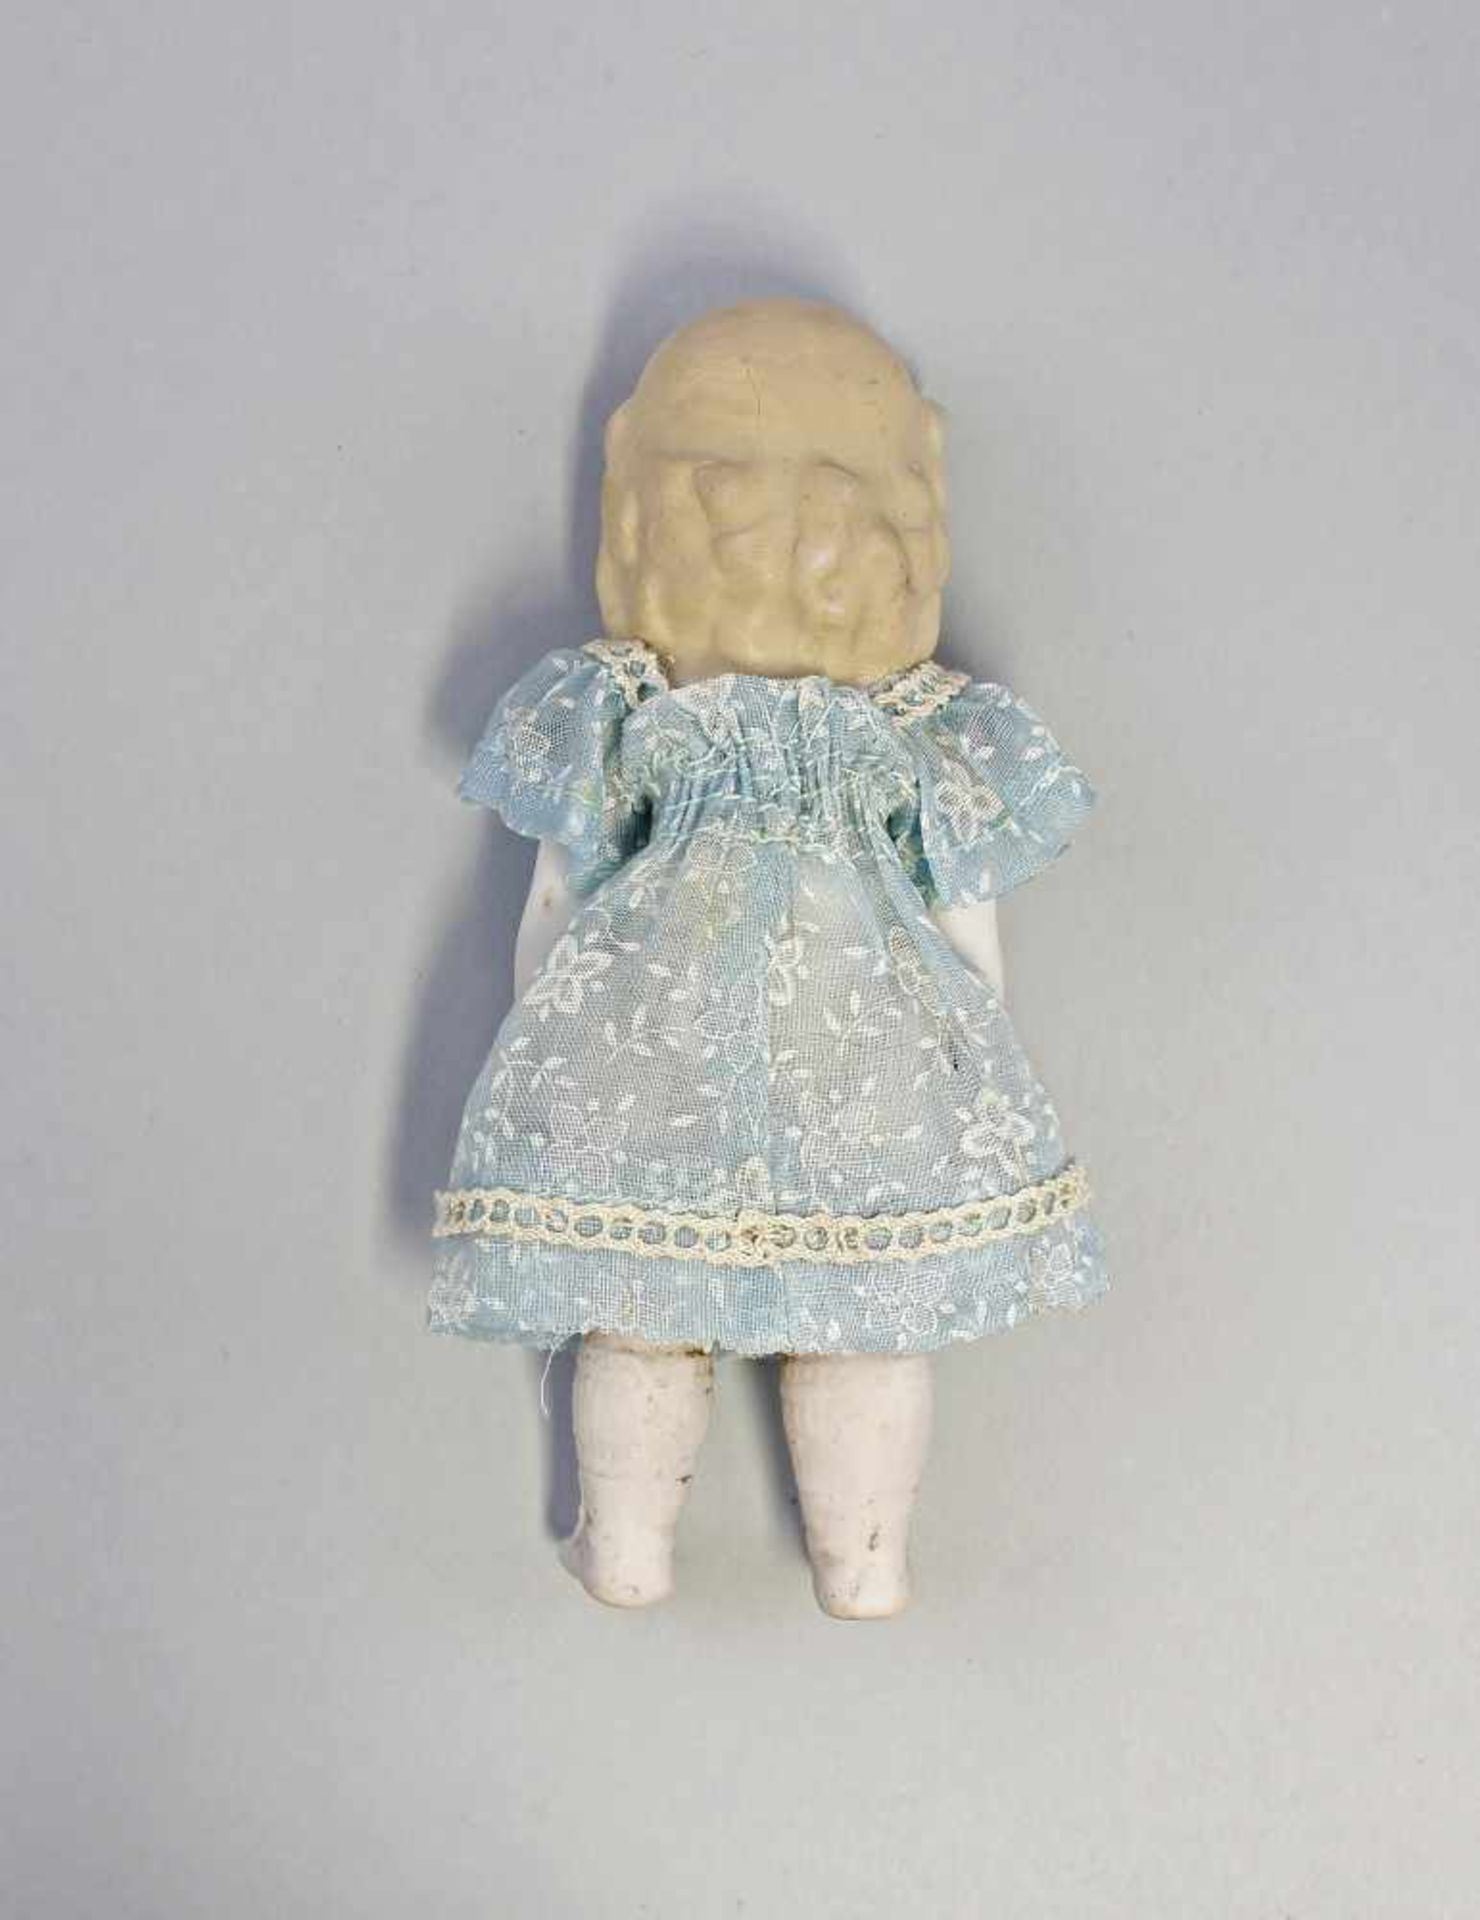 Ganz-Bisk.-Porz.-Puppenstubenpuppe um 1900, anmod. blondes Haar, Arme und Beine mit Draht - Bild 2 aus 2